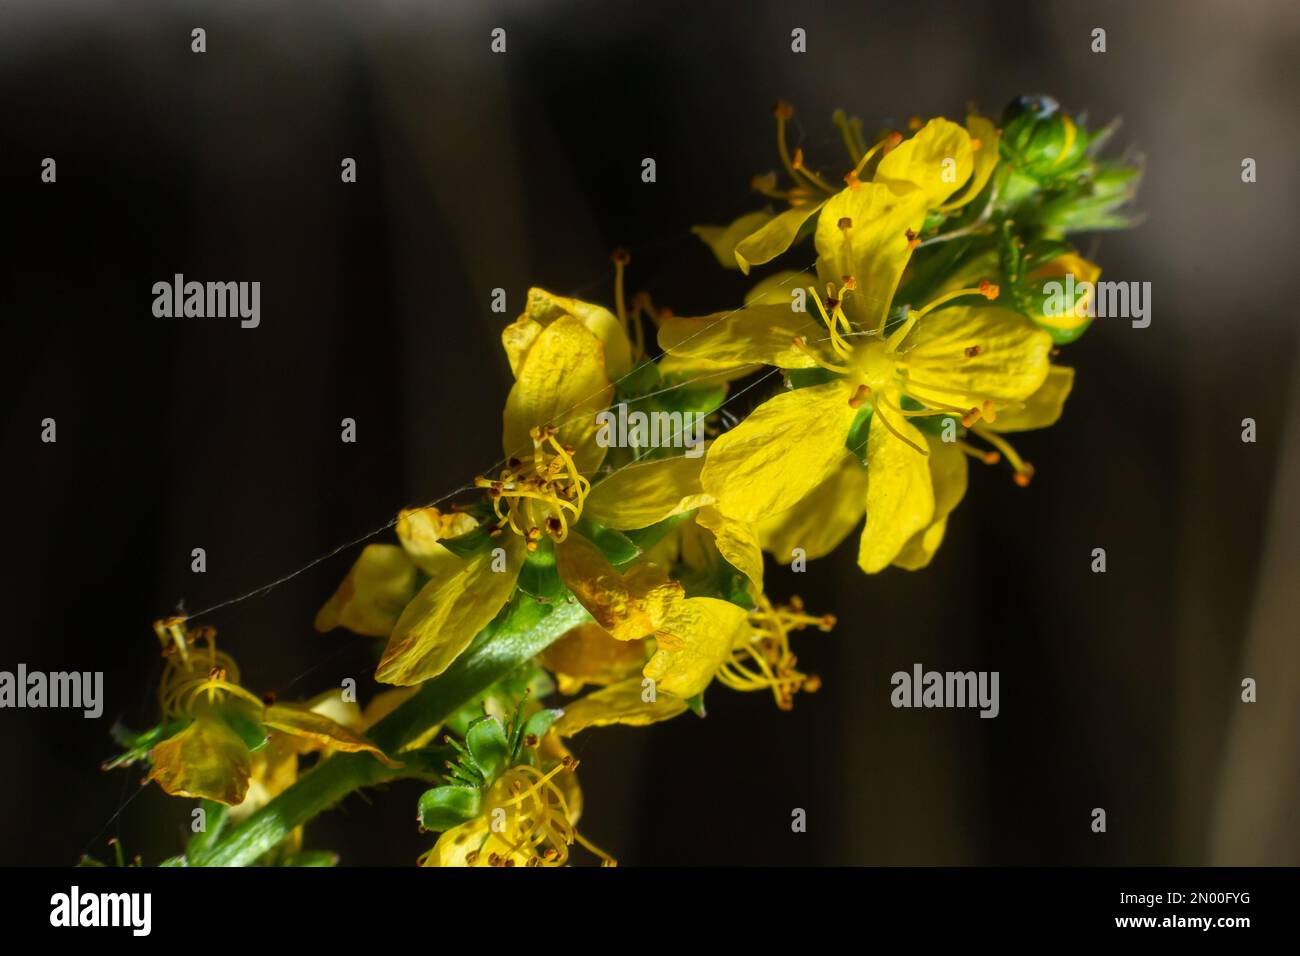 Agrimonia, Eupatoria, ist eine wichtige Heilpflanze mit gelben Blüten. Es ist eine schöne mehrjährige Pflanze und wird auch in der Medizin verwendet. Stockfoto